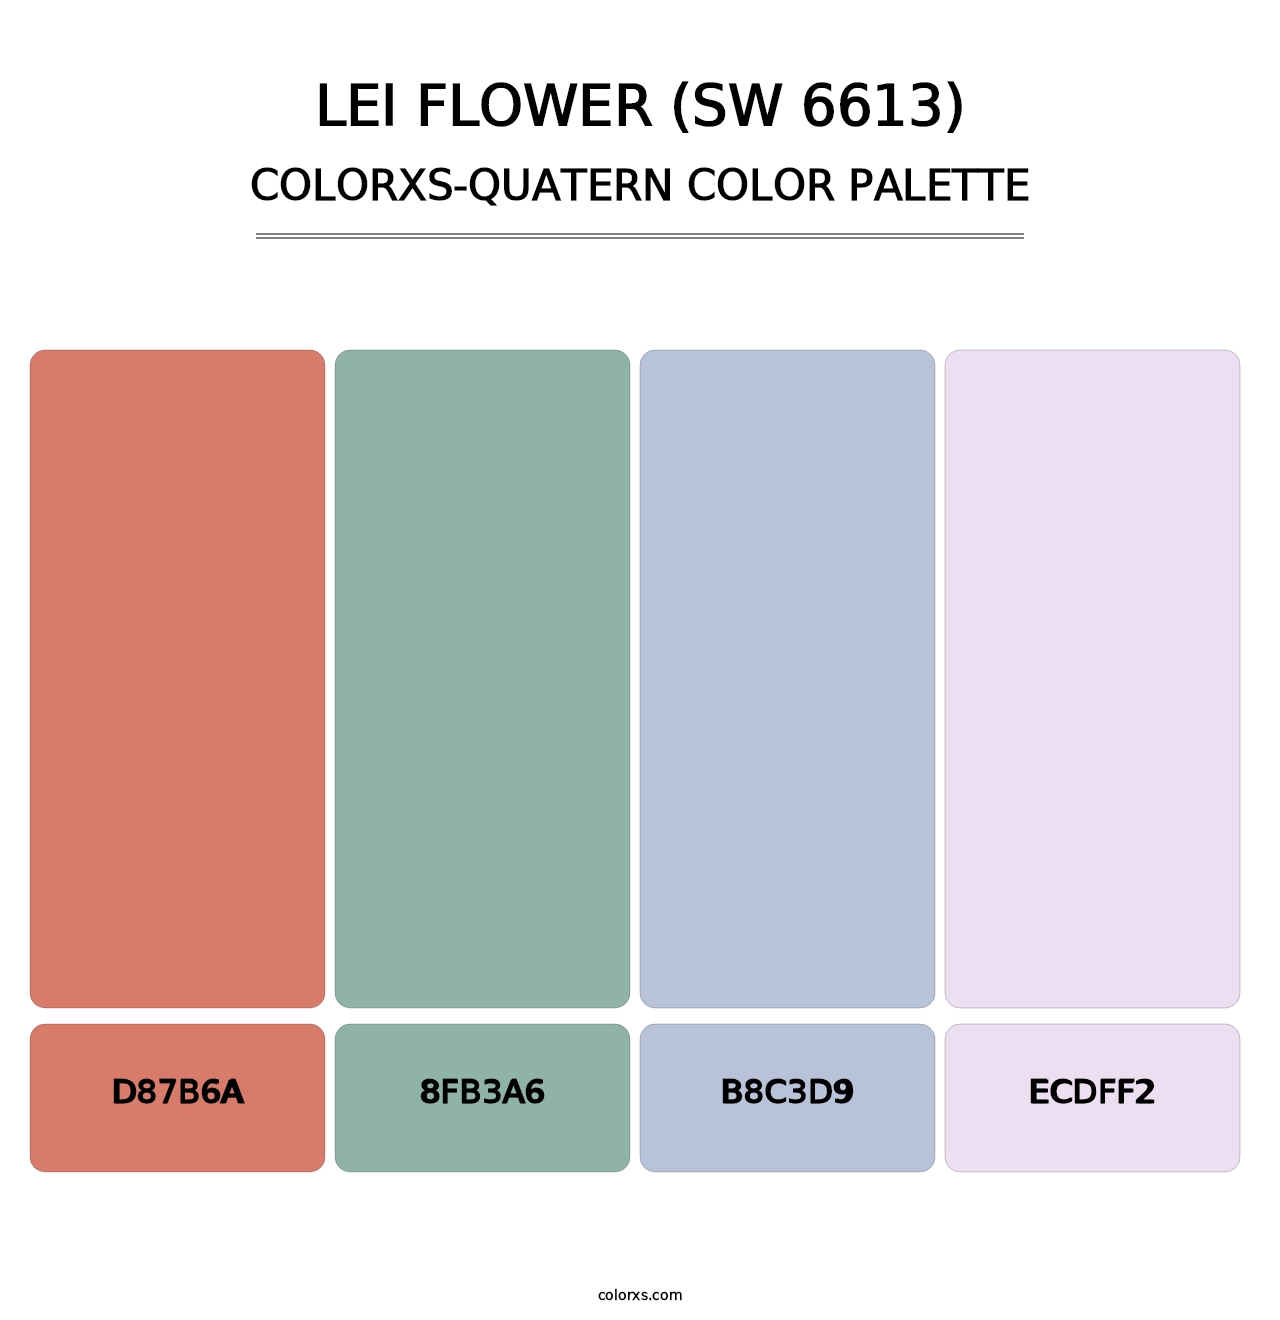 Lei Flower (SW 6613) - Colorxs Quatern Palette